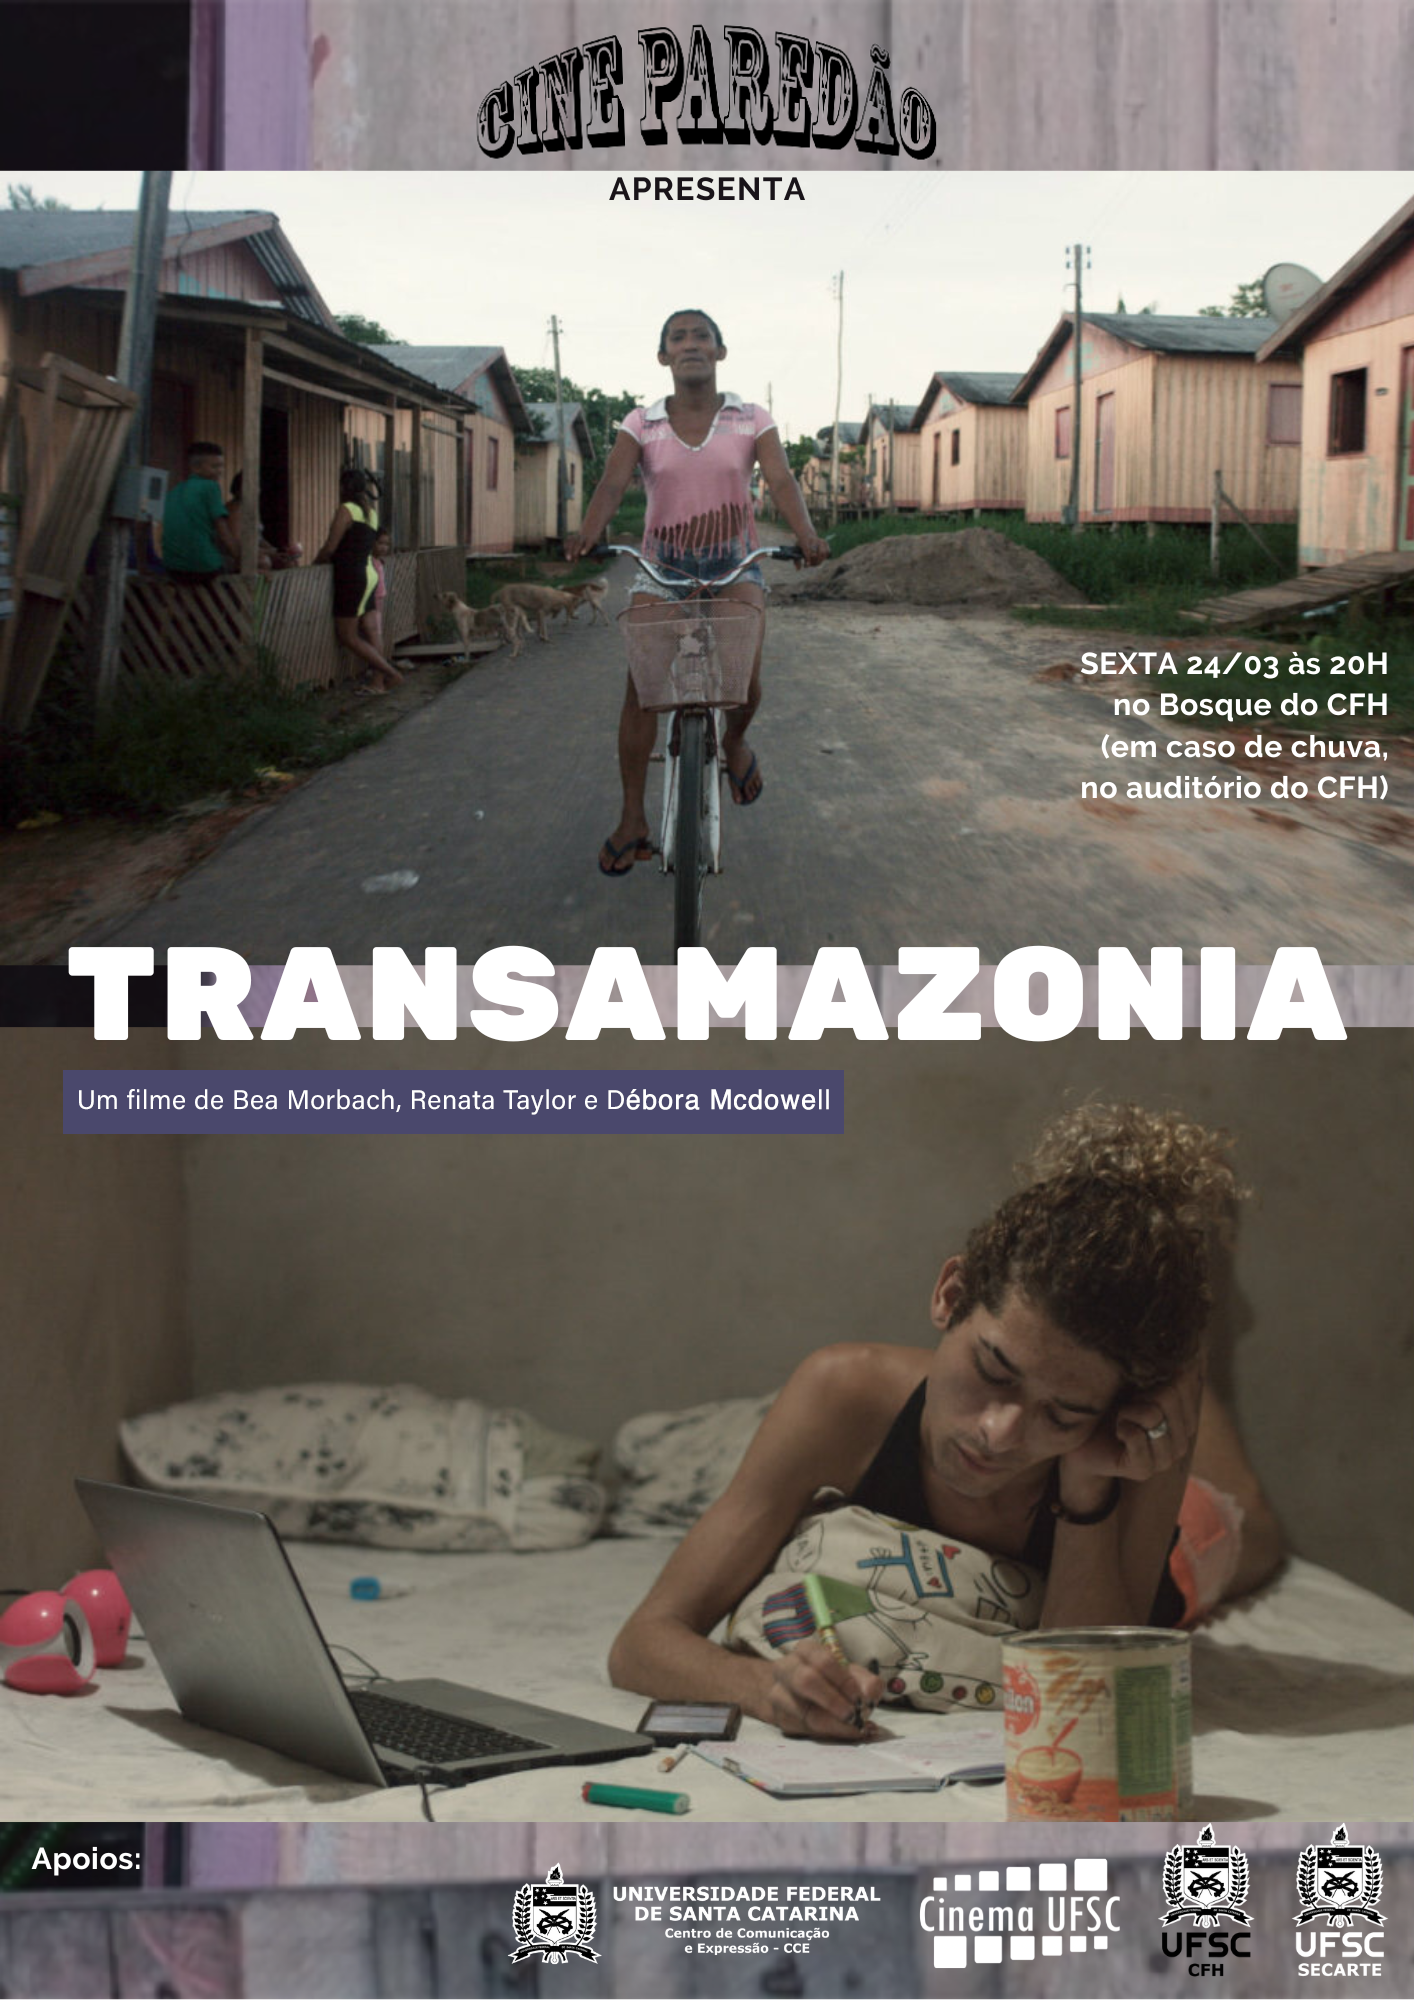 Cine Paredão - Transamazonia @ Bosque do CFH